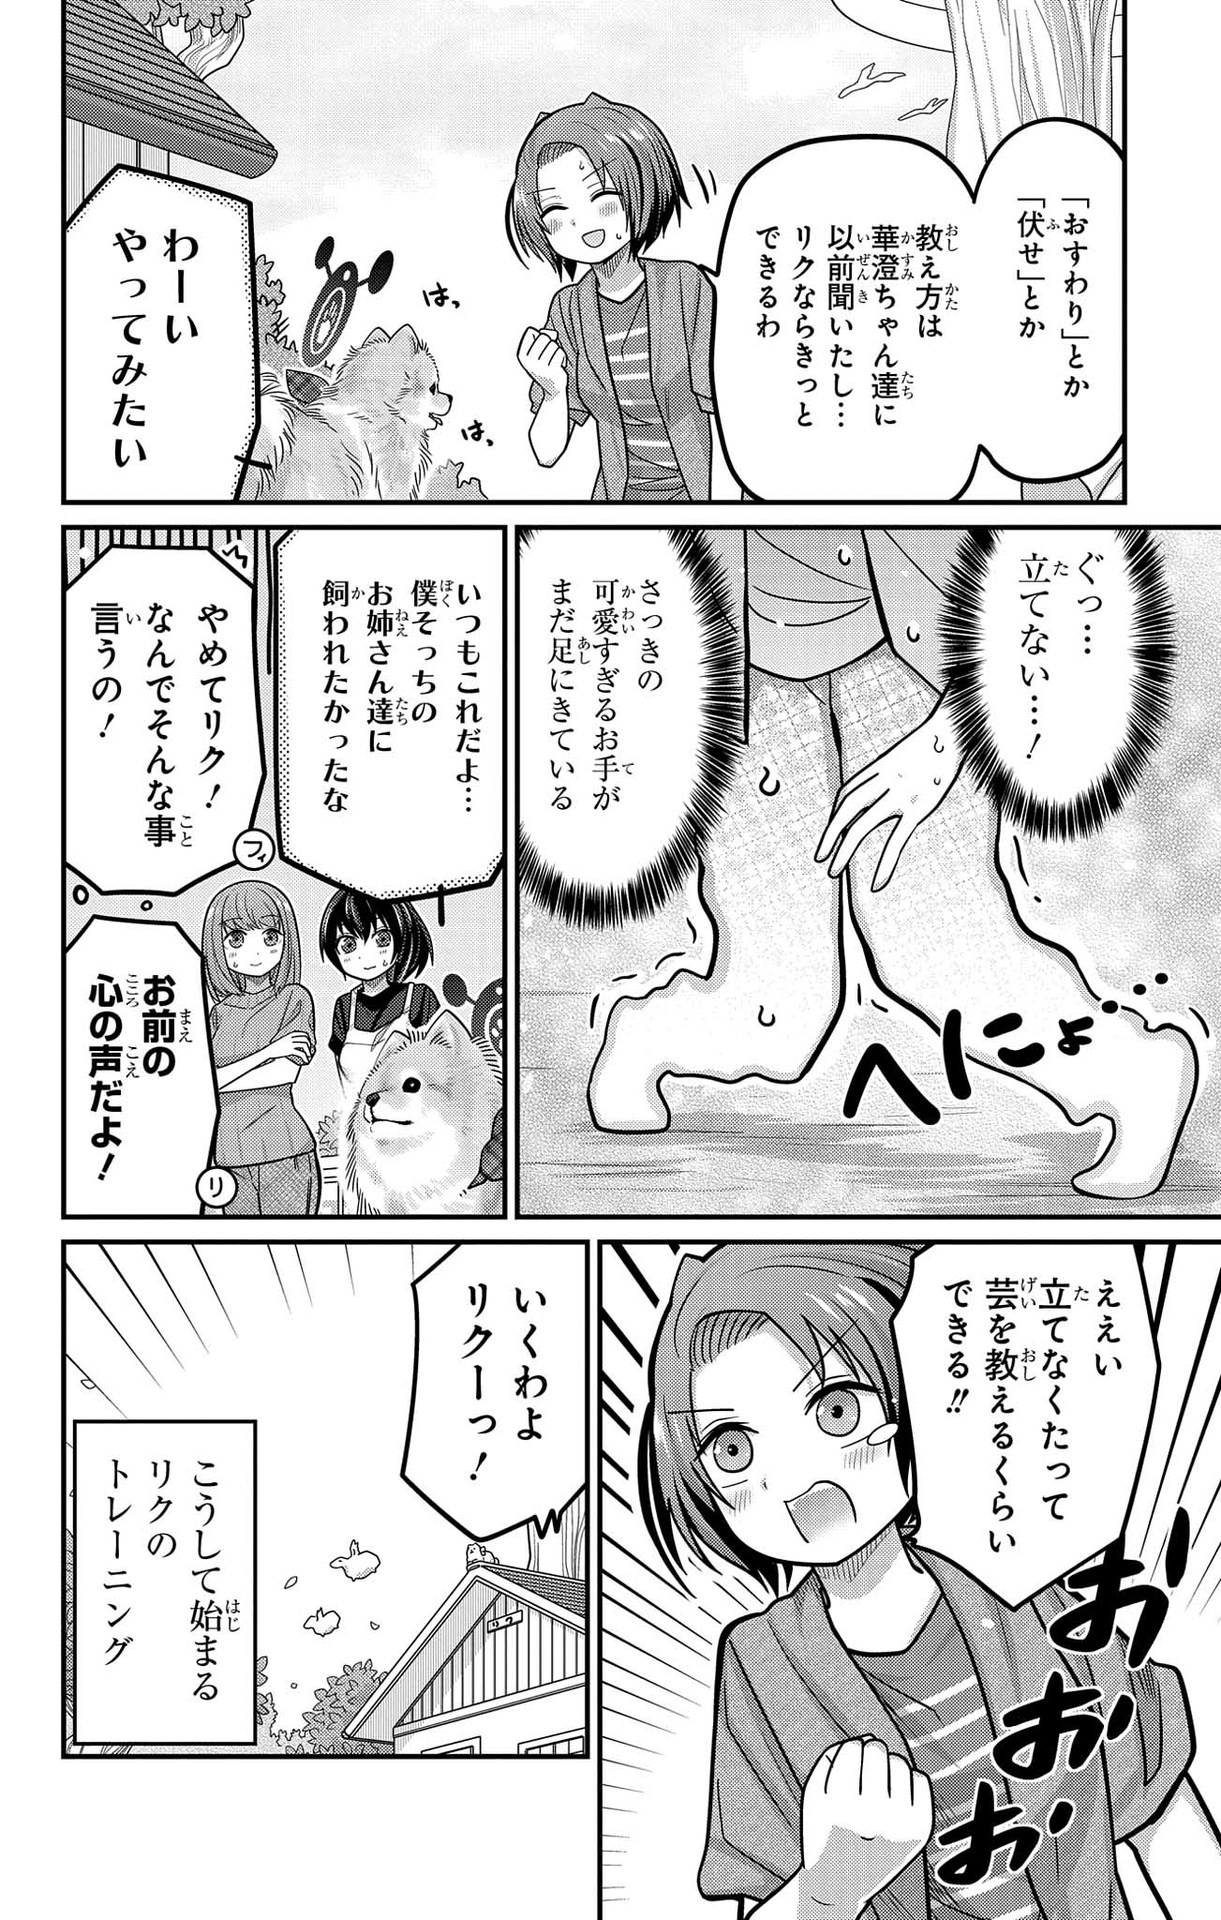 Kawaisugi Crisis - Chapter 95 - Page 12